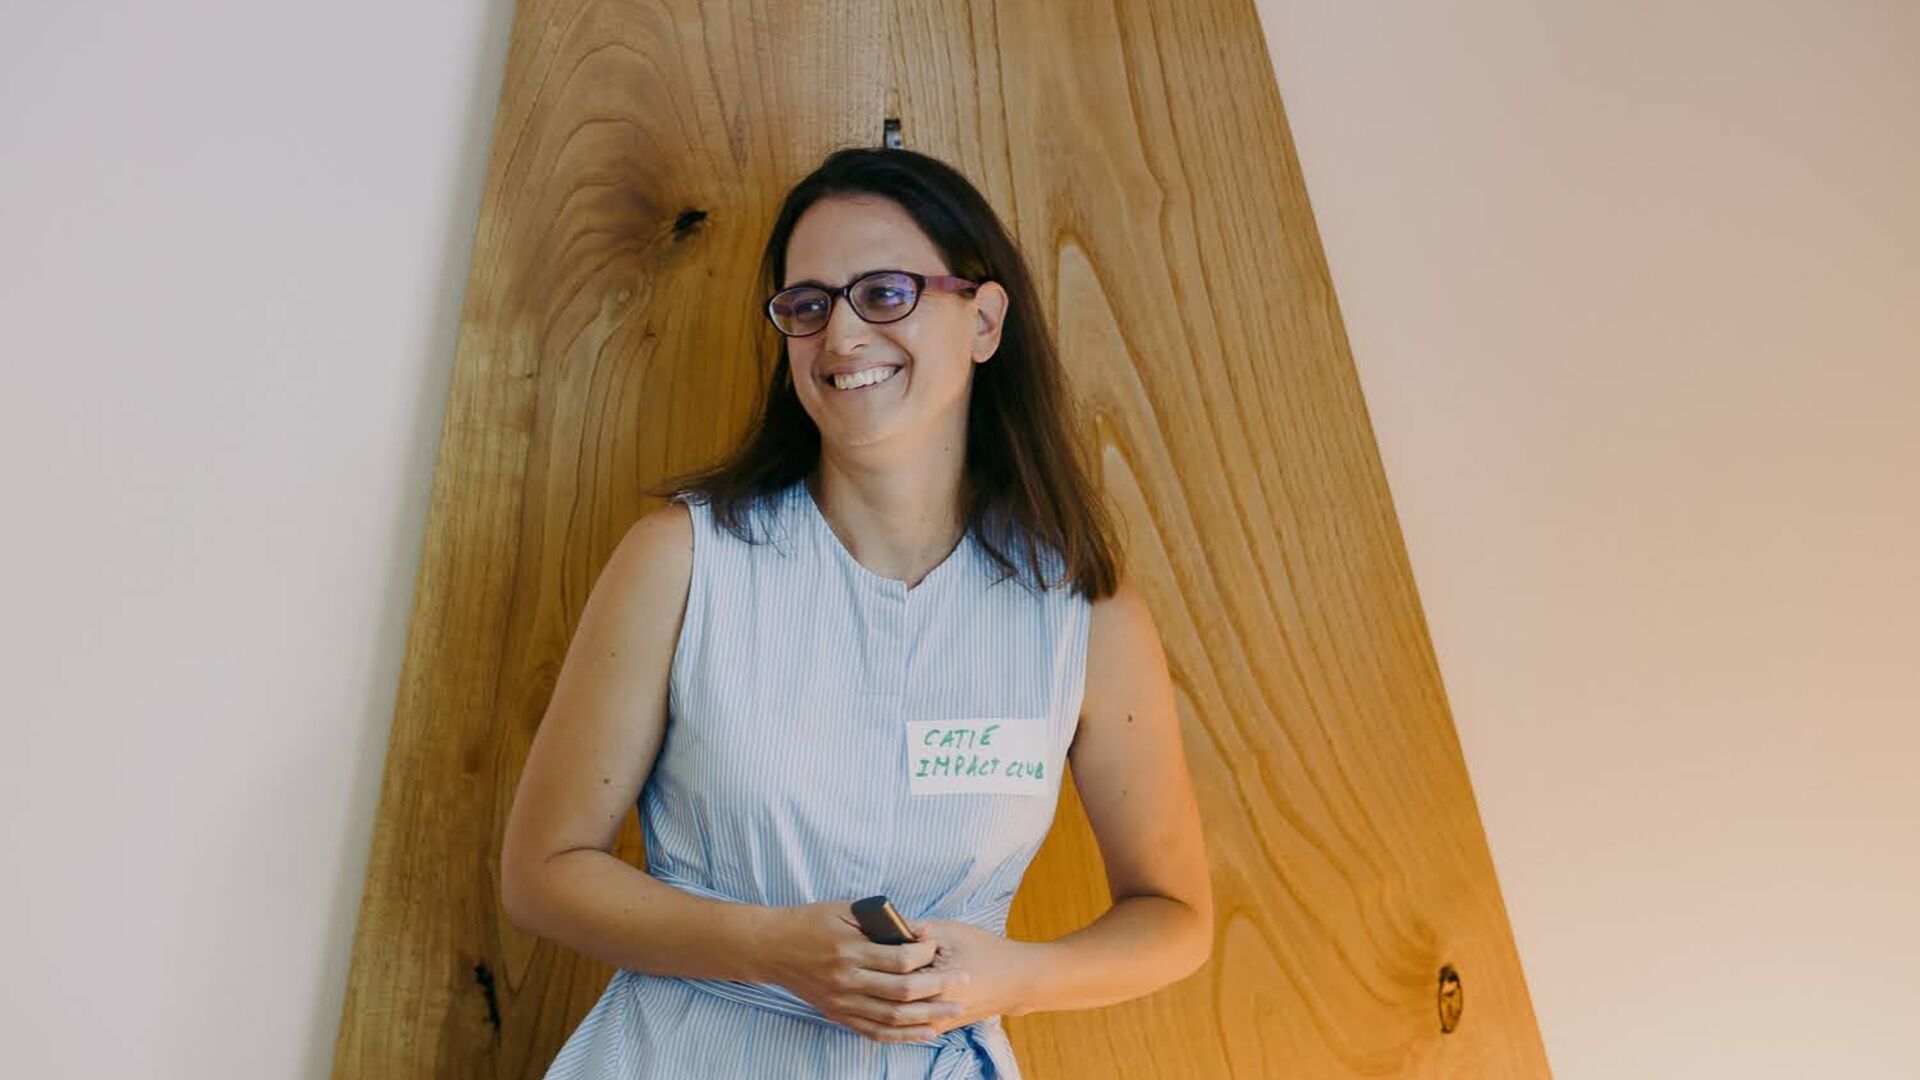 Impact Club: Catie Burlando, Impact Club incubator manager, alla prima edizione dell’iniziativa a incubatore a impatto organizzata nell’estate del 2022 dall’Impact Hub Ticino di Lugano